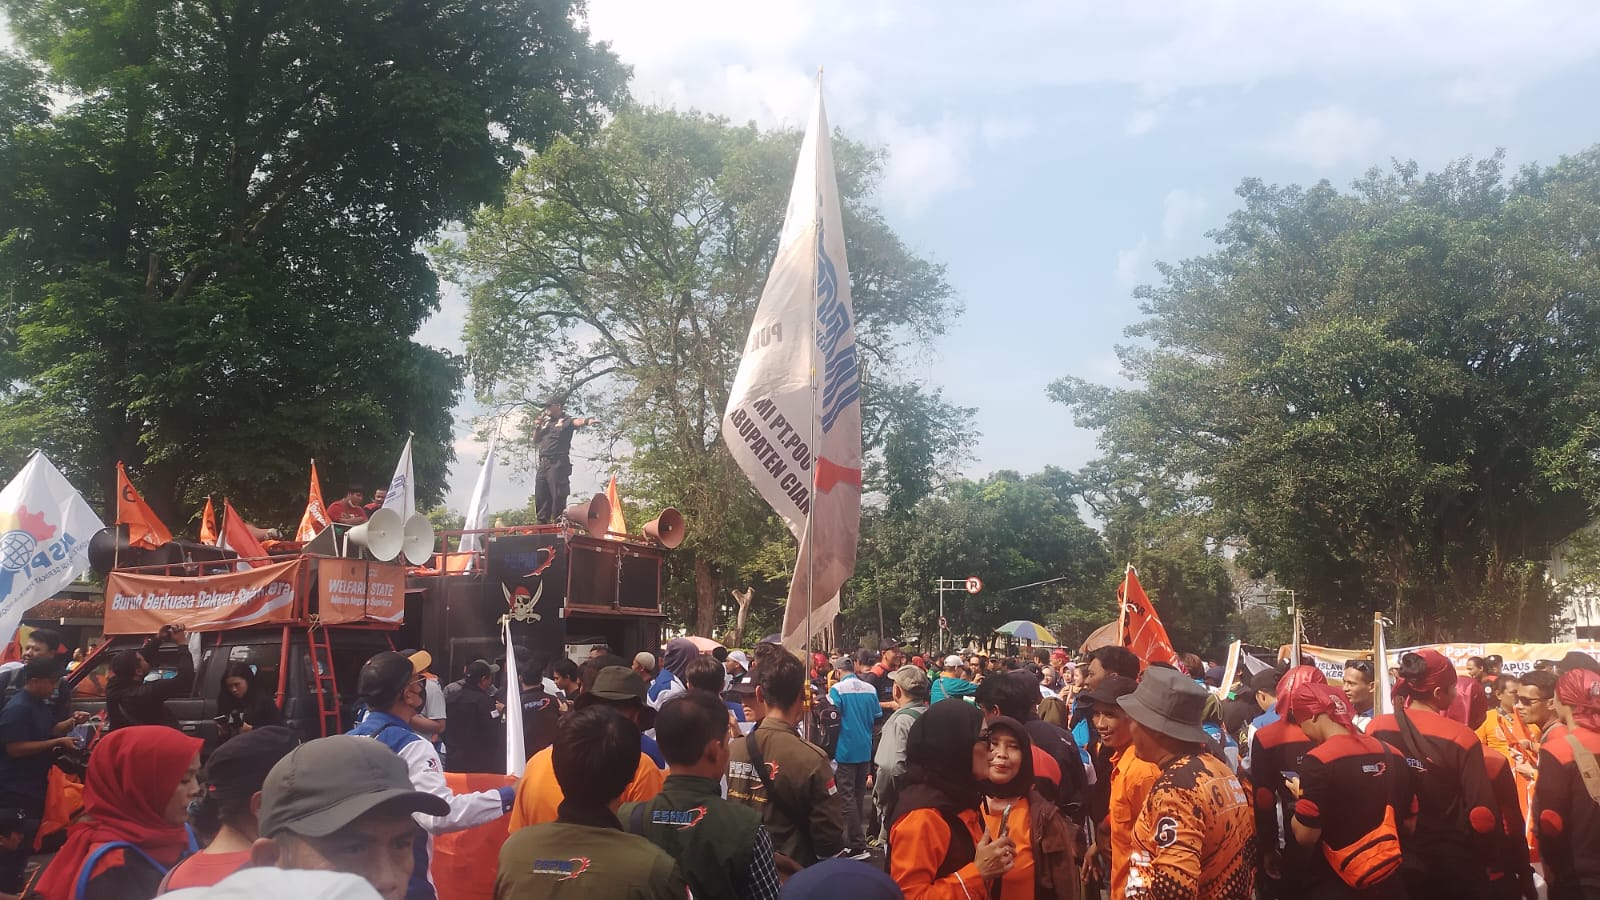 SAMPAIKAN ASPIRASI: Ratusan buruh yang tergabung dari berbagai serikat pekerja tengah menggelar aksi di depan Gedung Sate, Kota Bandung, Provinsi Jawa Barat. (YANUAR/JABAREKSPRES)